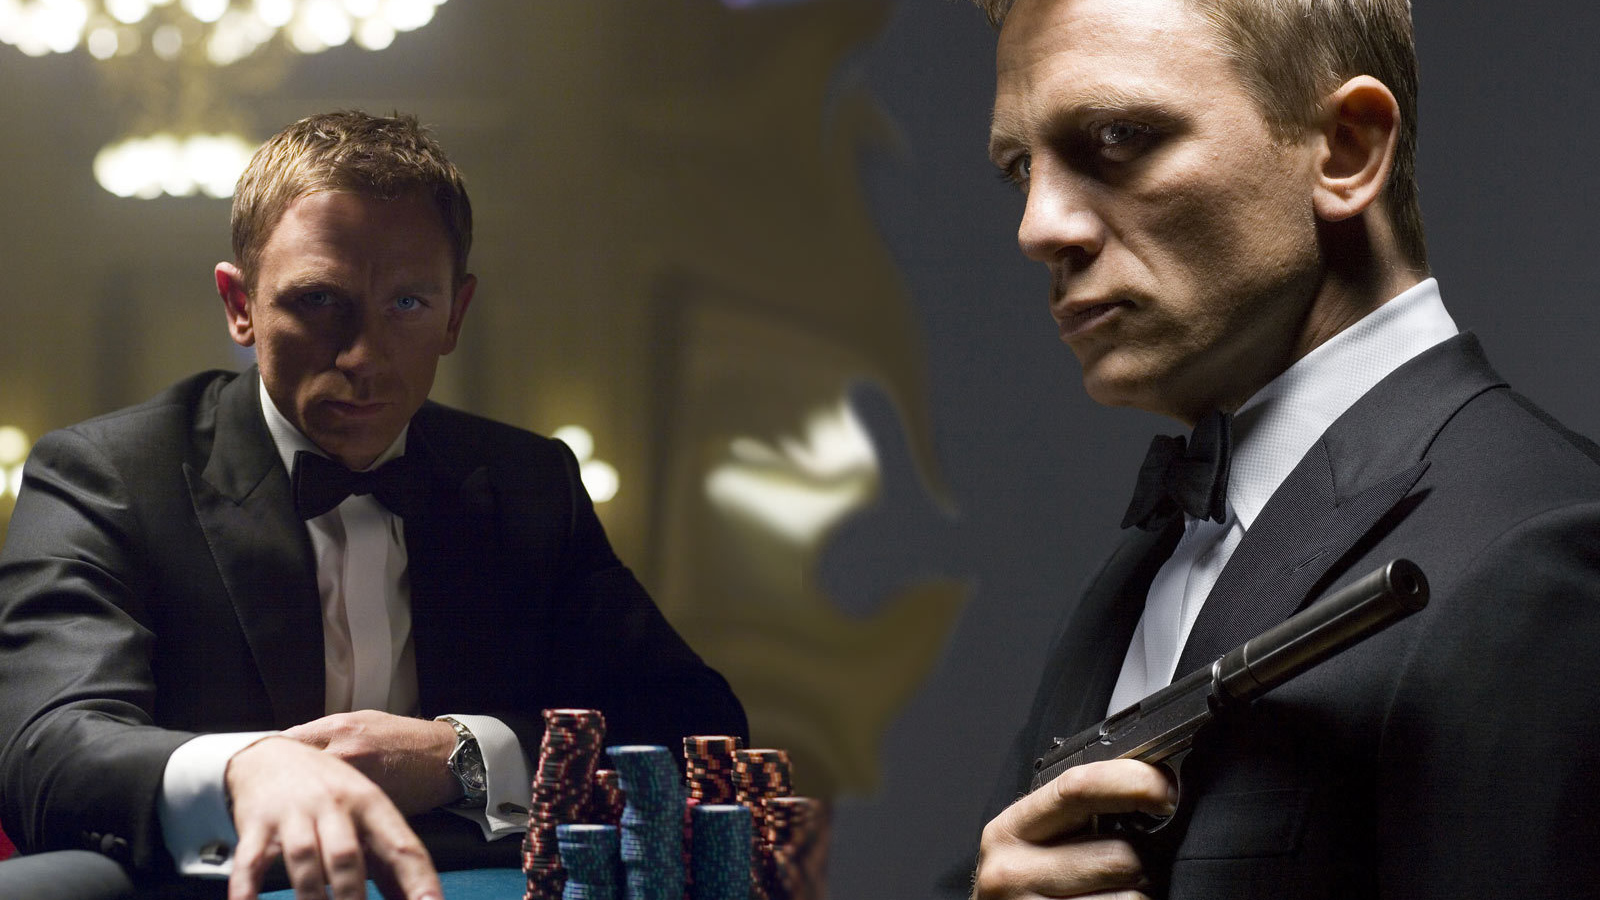 Агент 007 казино рояль смотреть онлайн бесплатно в хорошем качестве pin up casino играть на деньги скачать